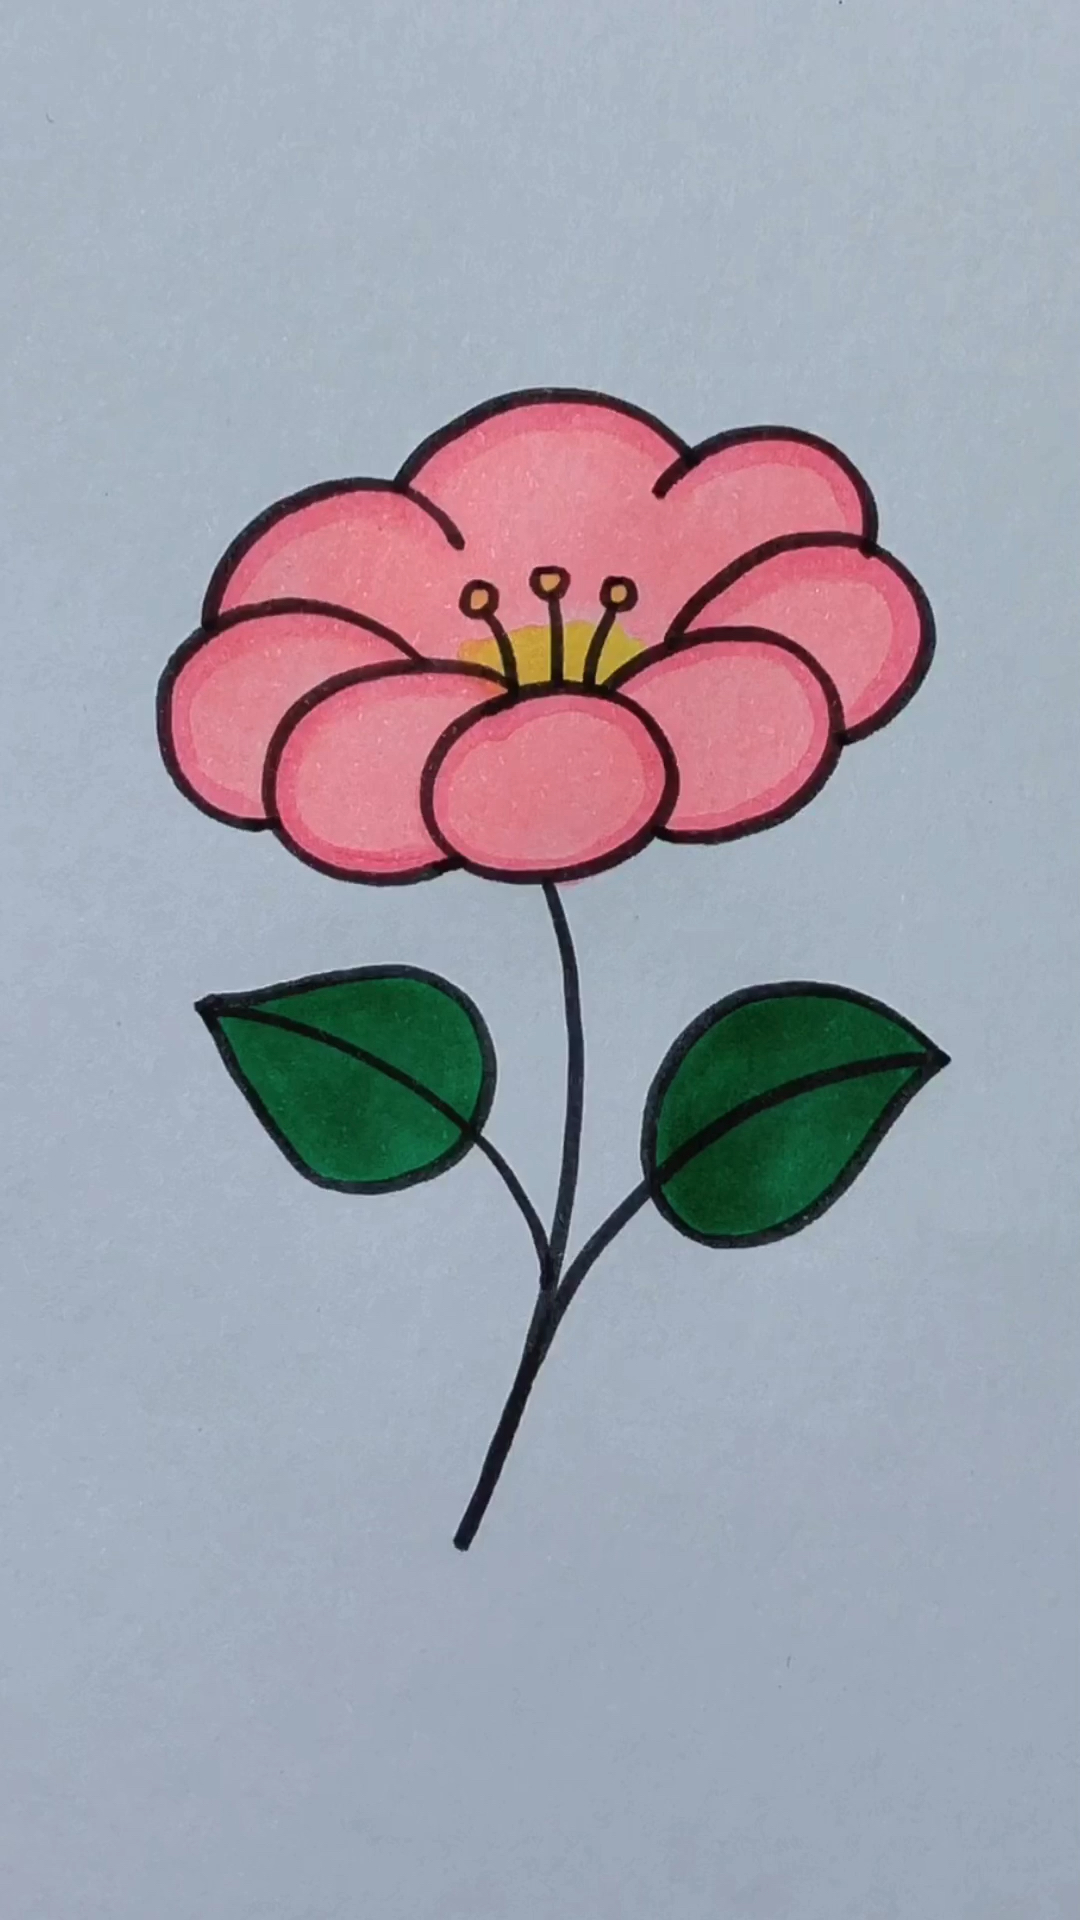 画一朵简单的小花图片